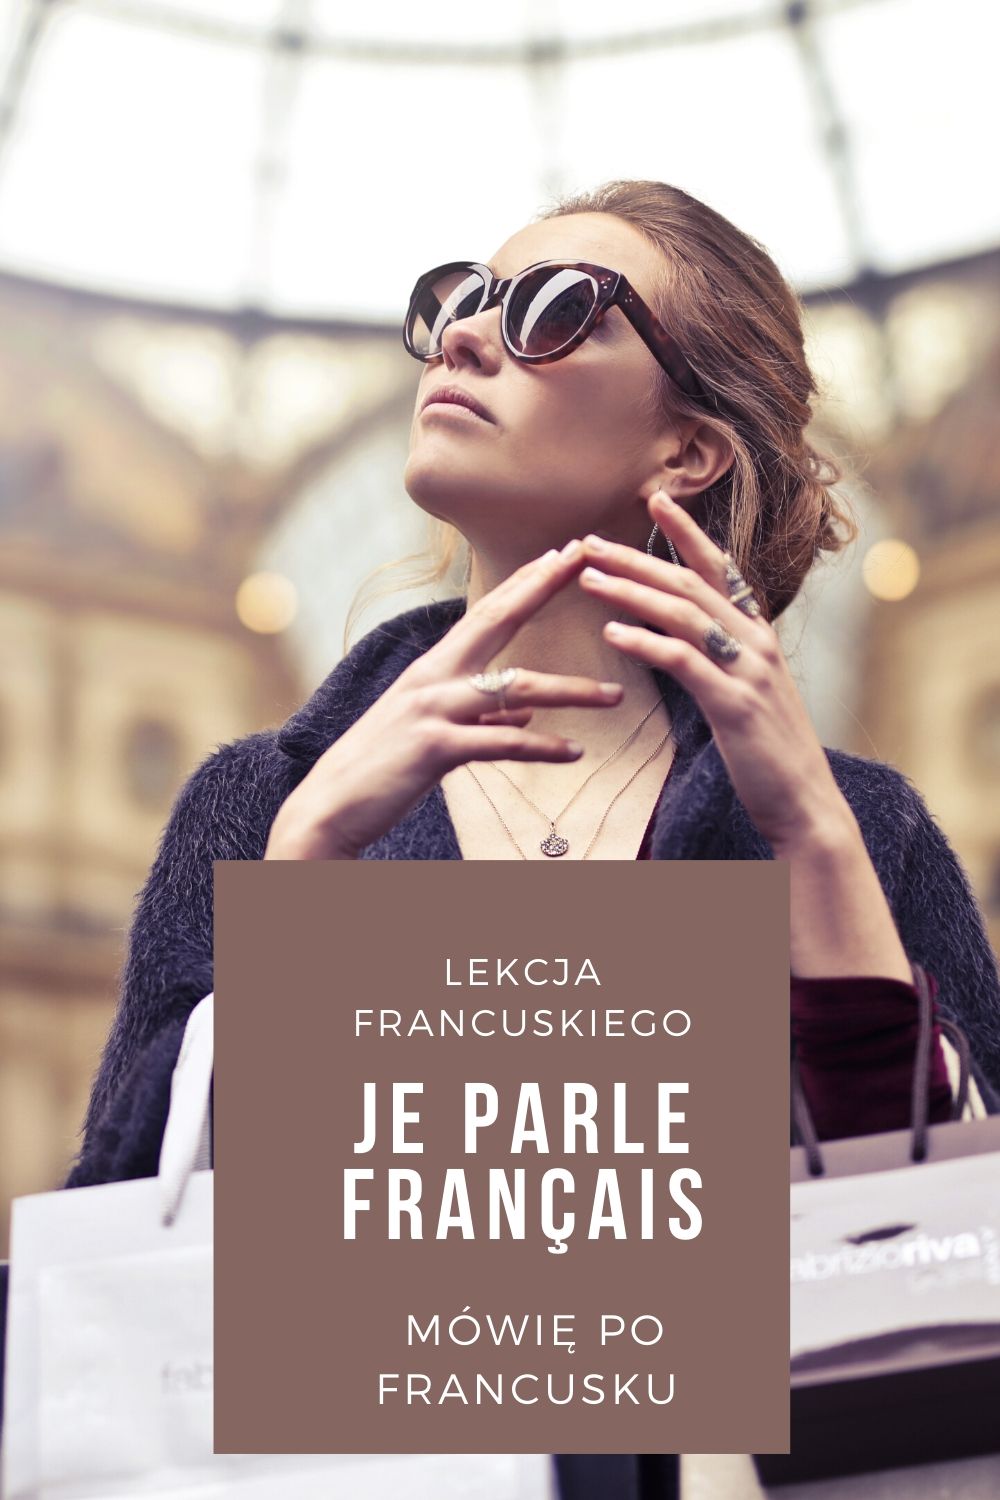 DZIEN DOBRY Francuski dla początkujących - proste dialogi - powitanie po francusku